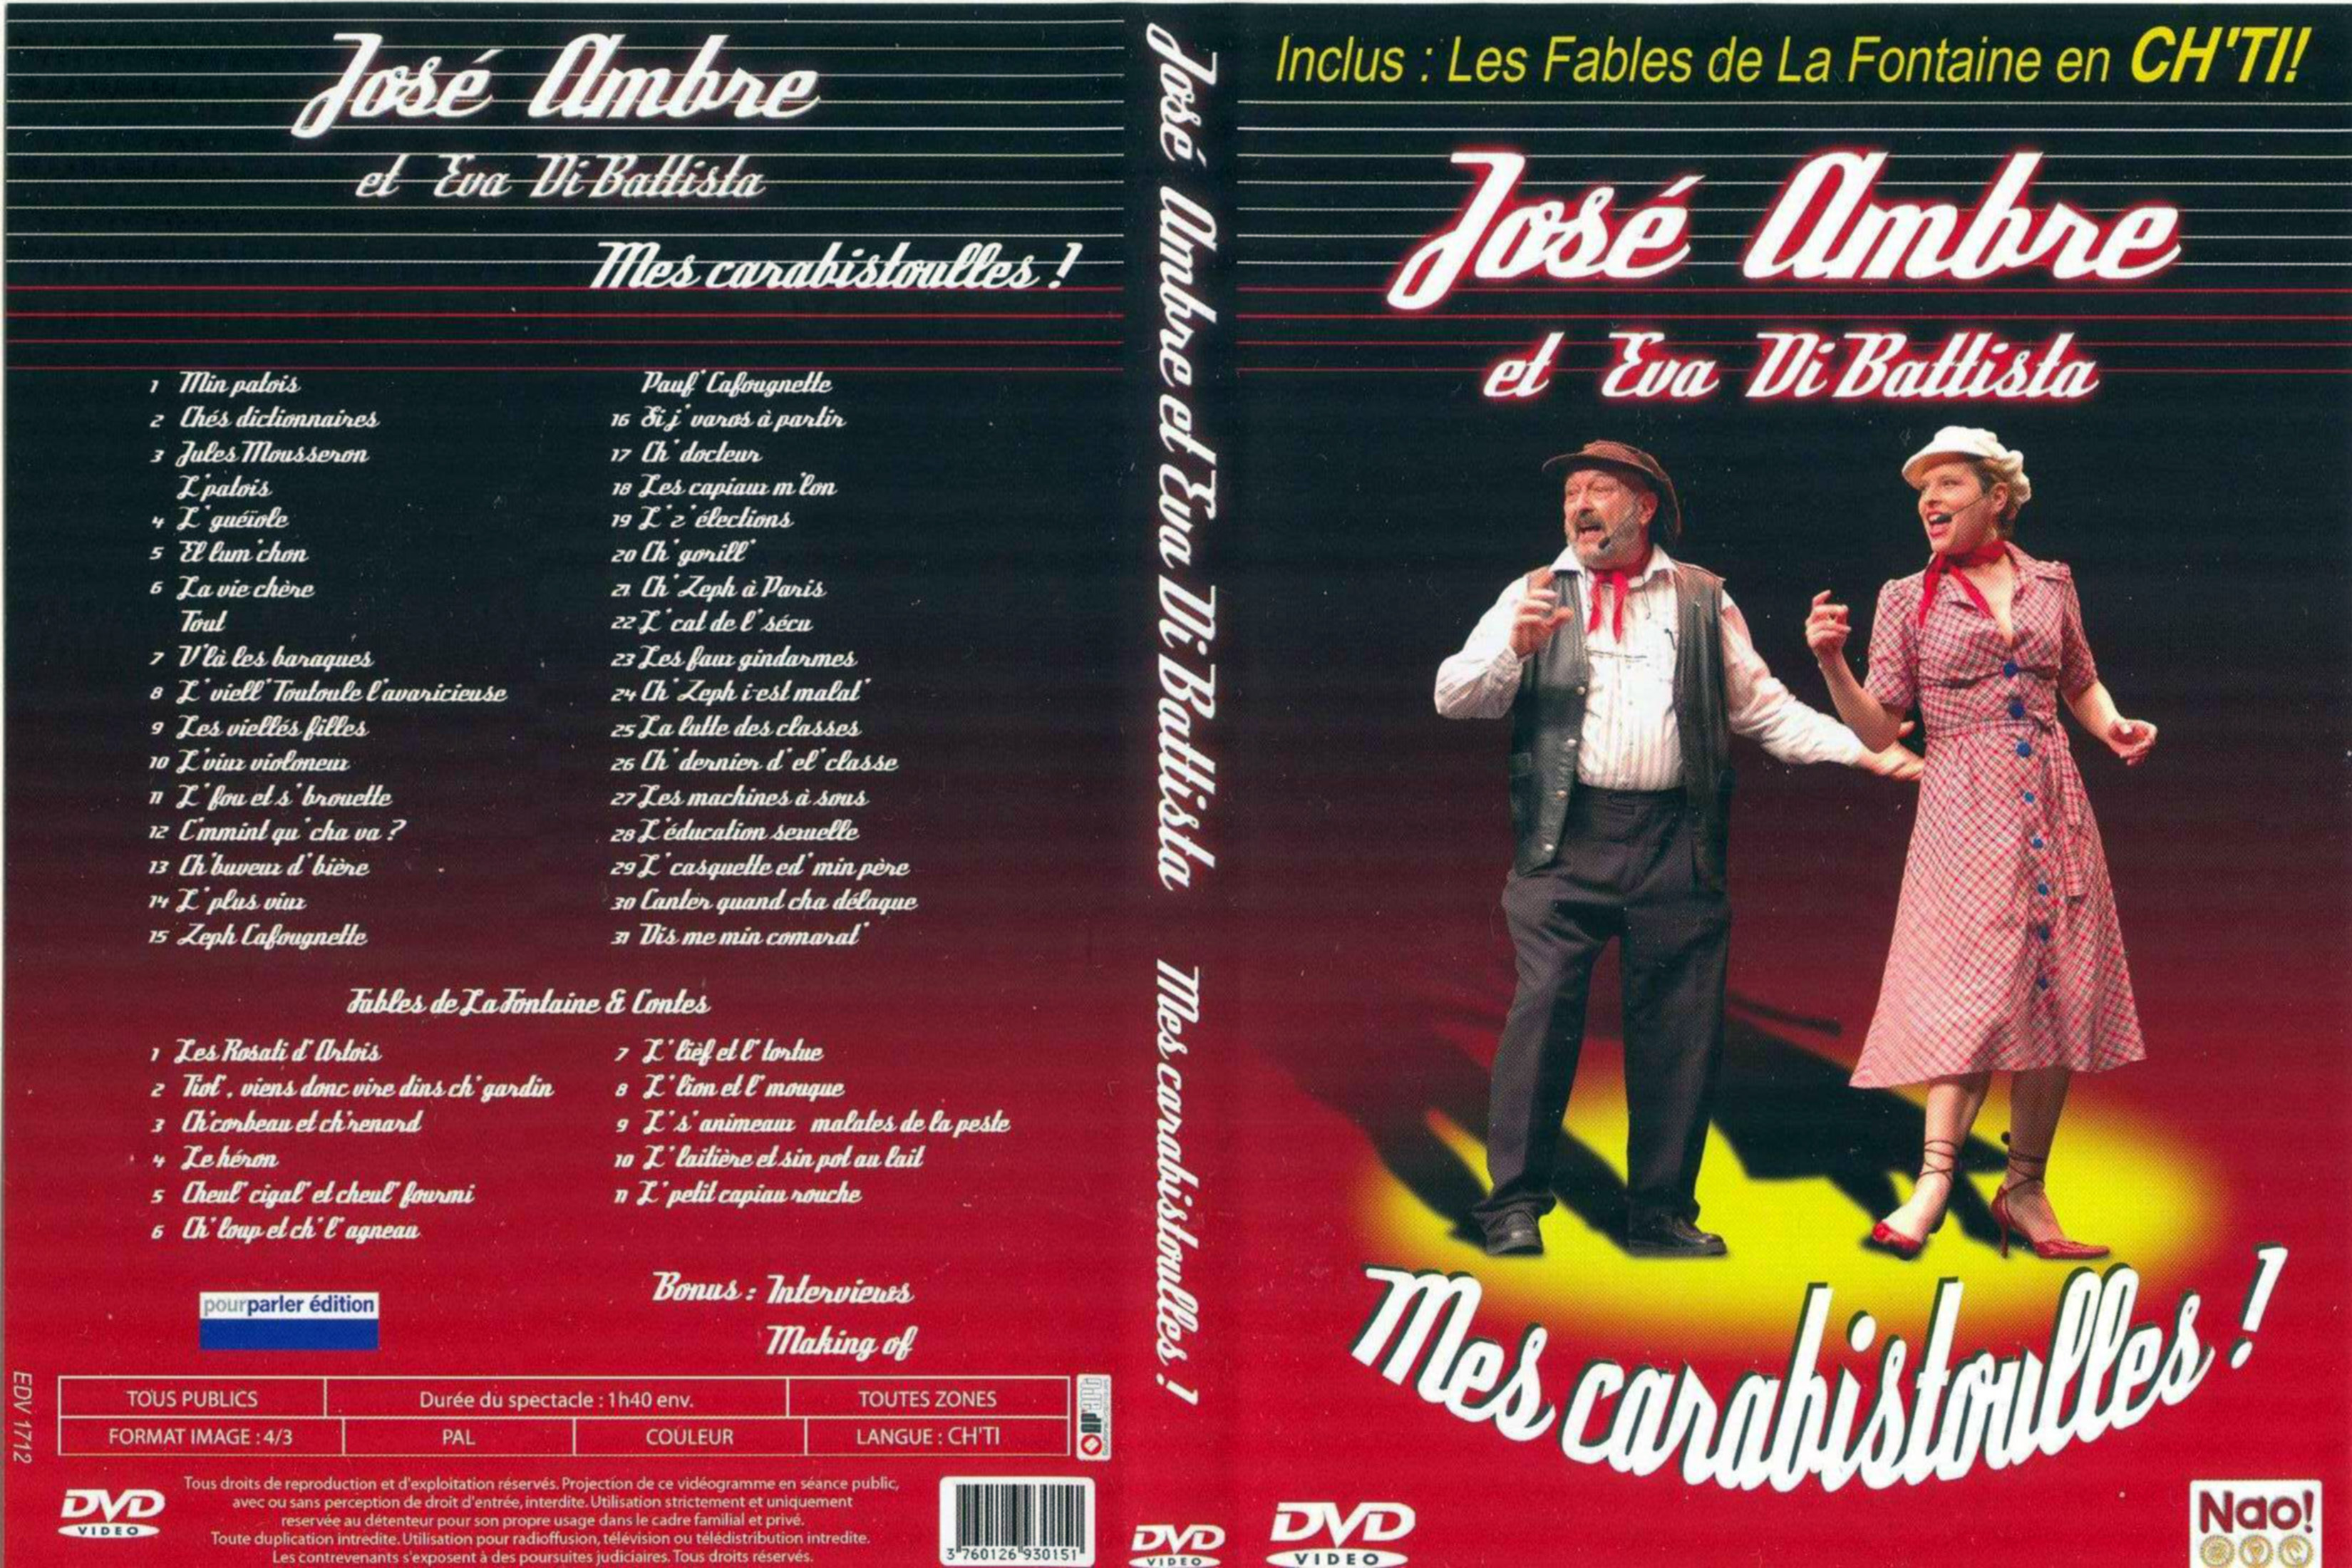 Jaquette DVD Jos Ambre Mes Carabistoulles